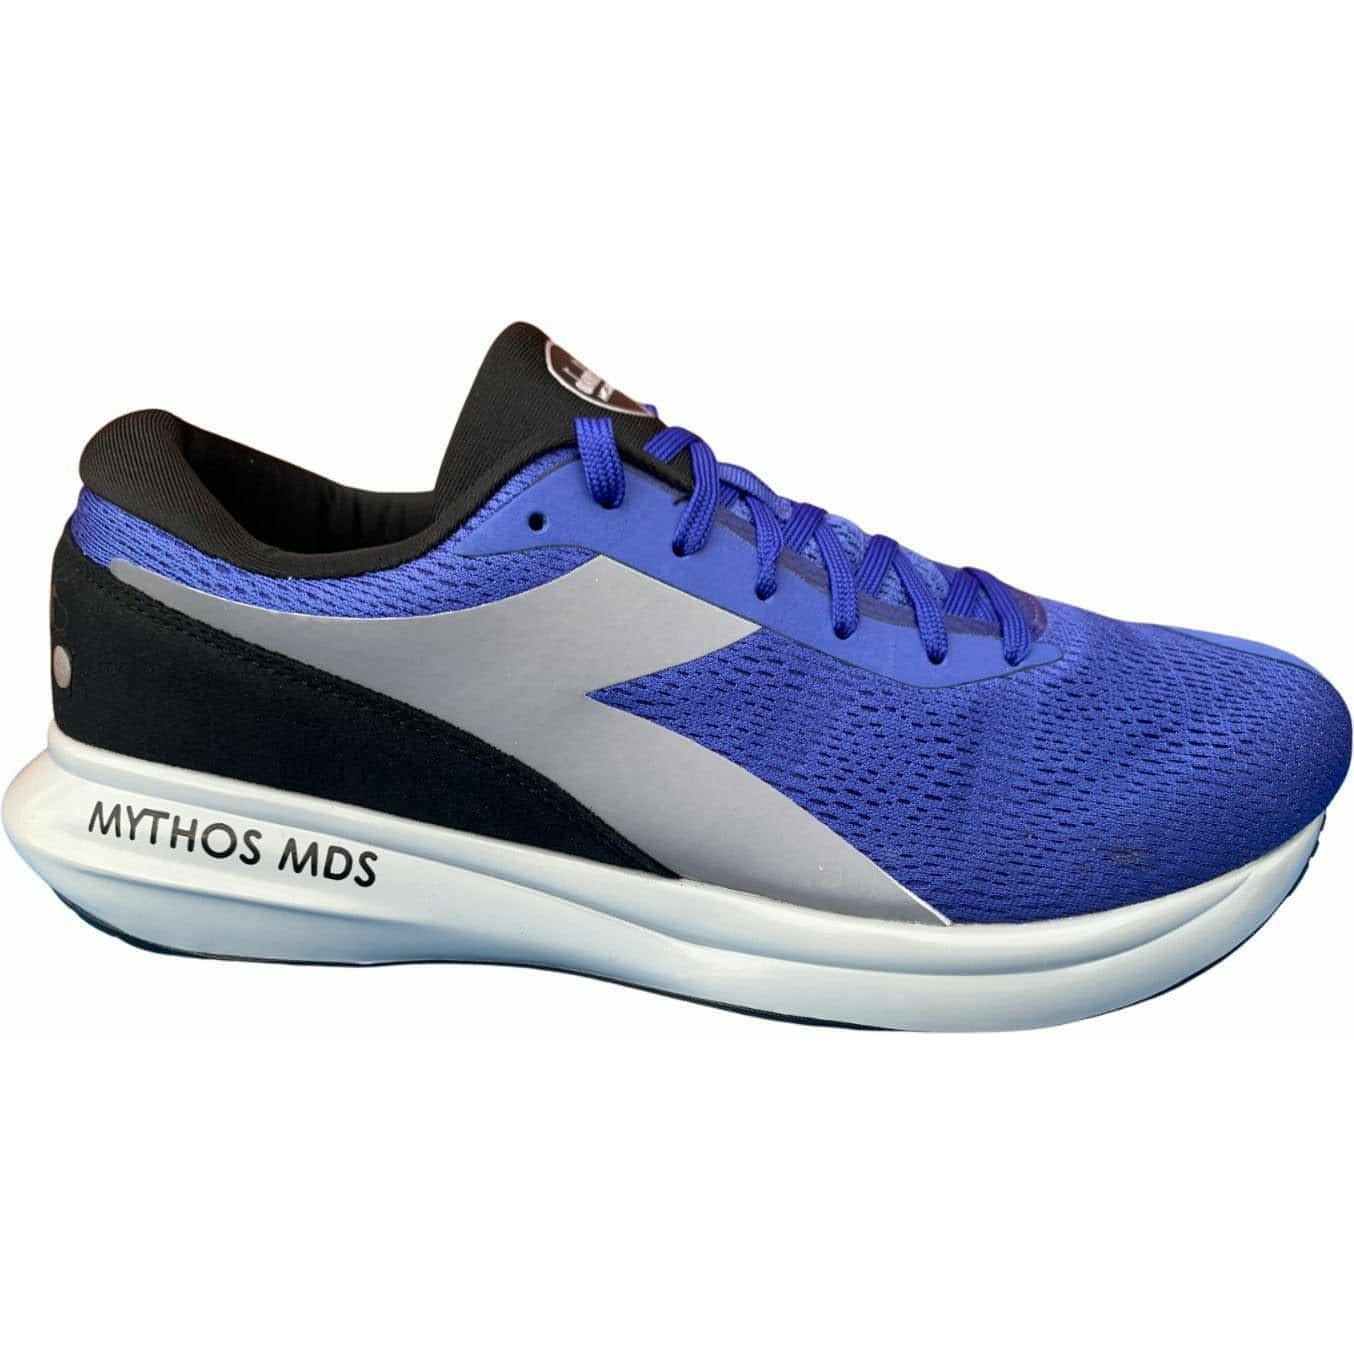 Diadora Mythos MDS Mens Running Shoes - Blue - Start Fitness